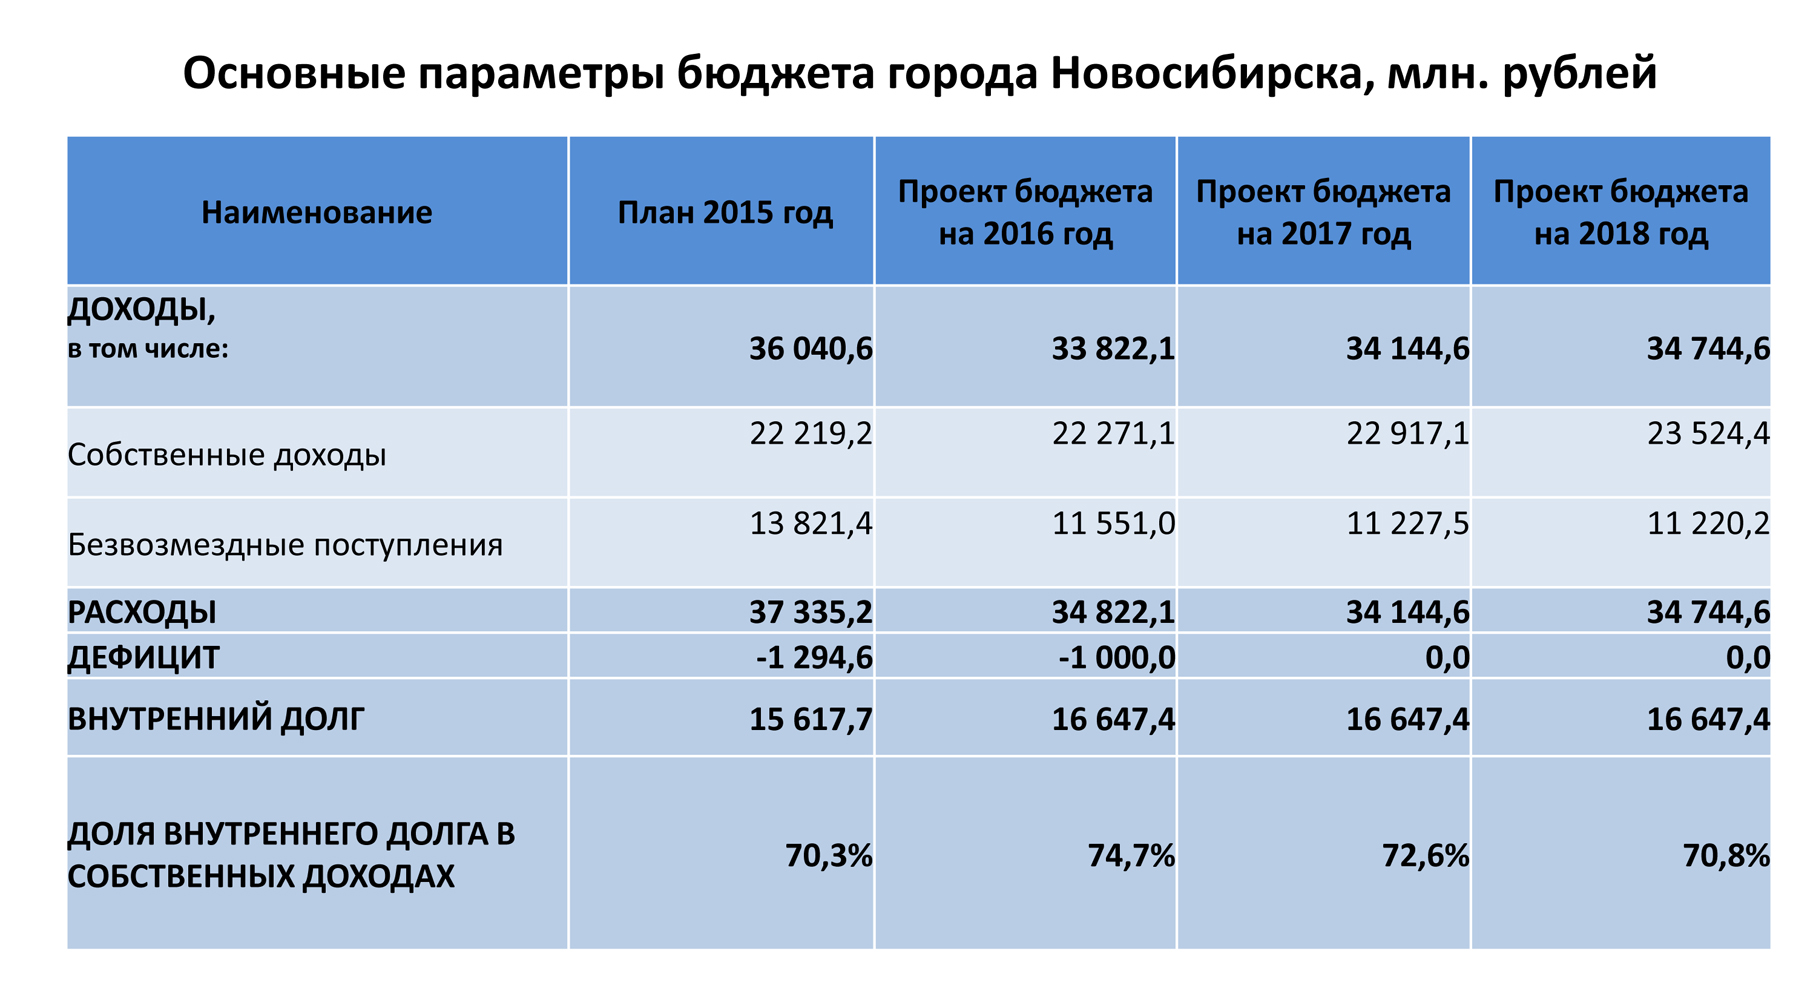 Основные параметры бюджета Новосибирска.jpg